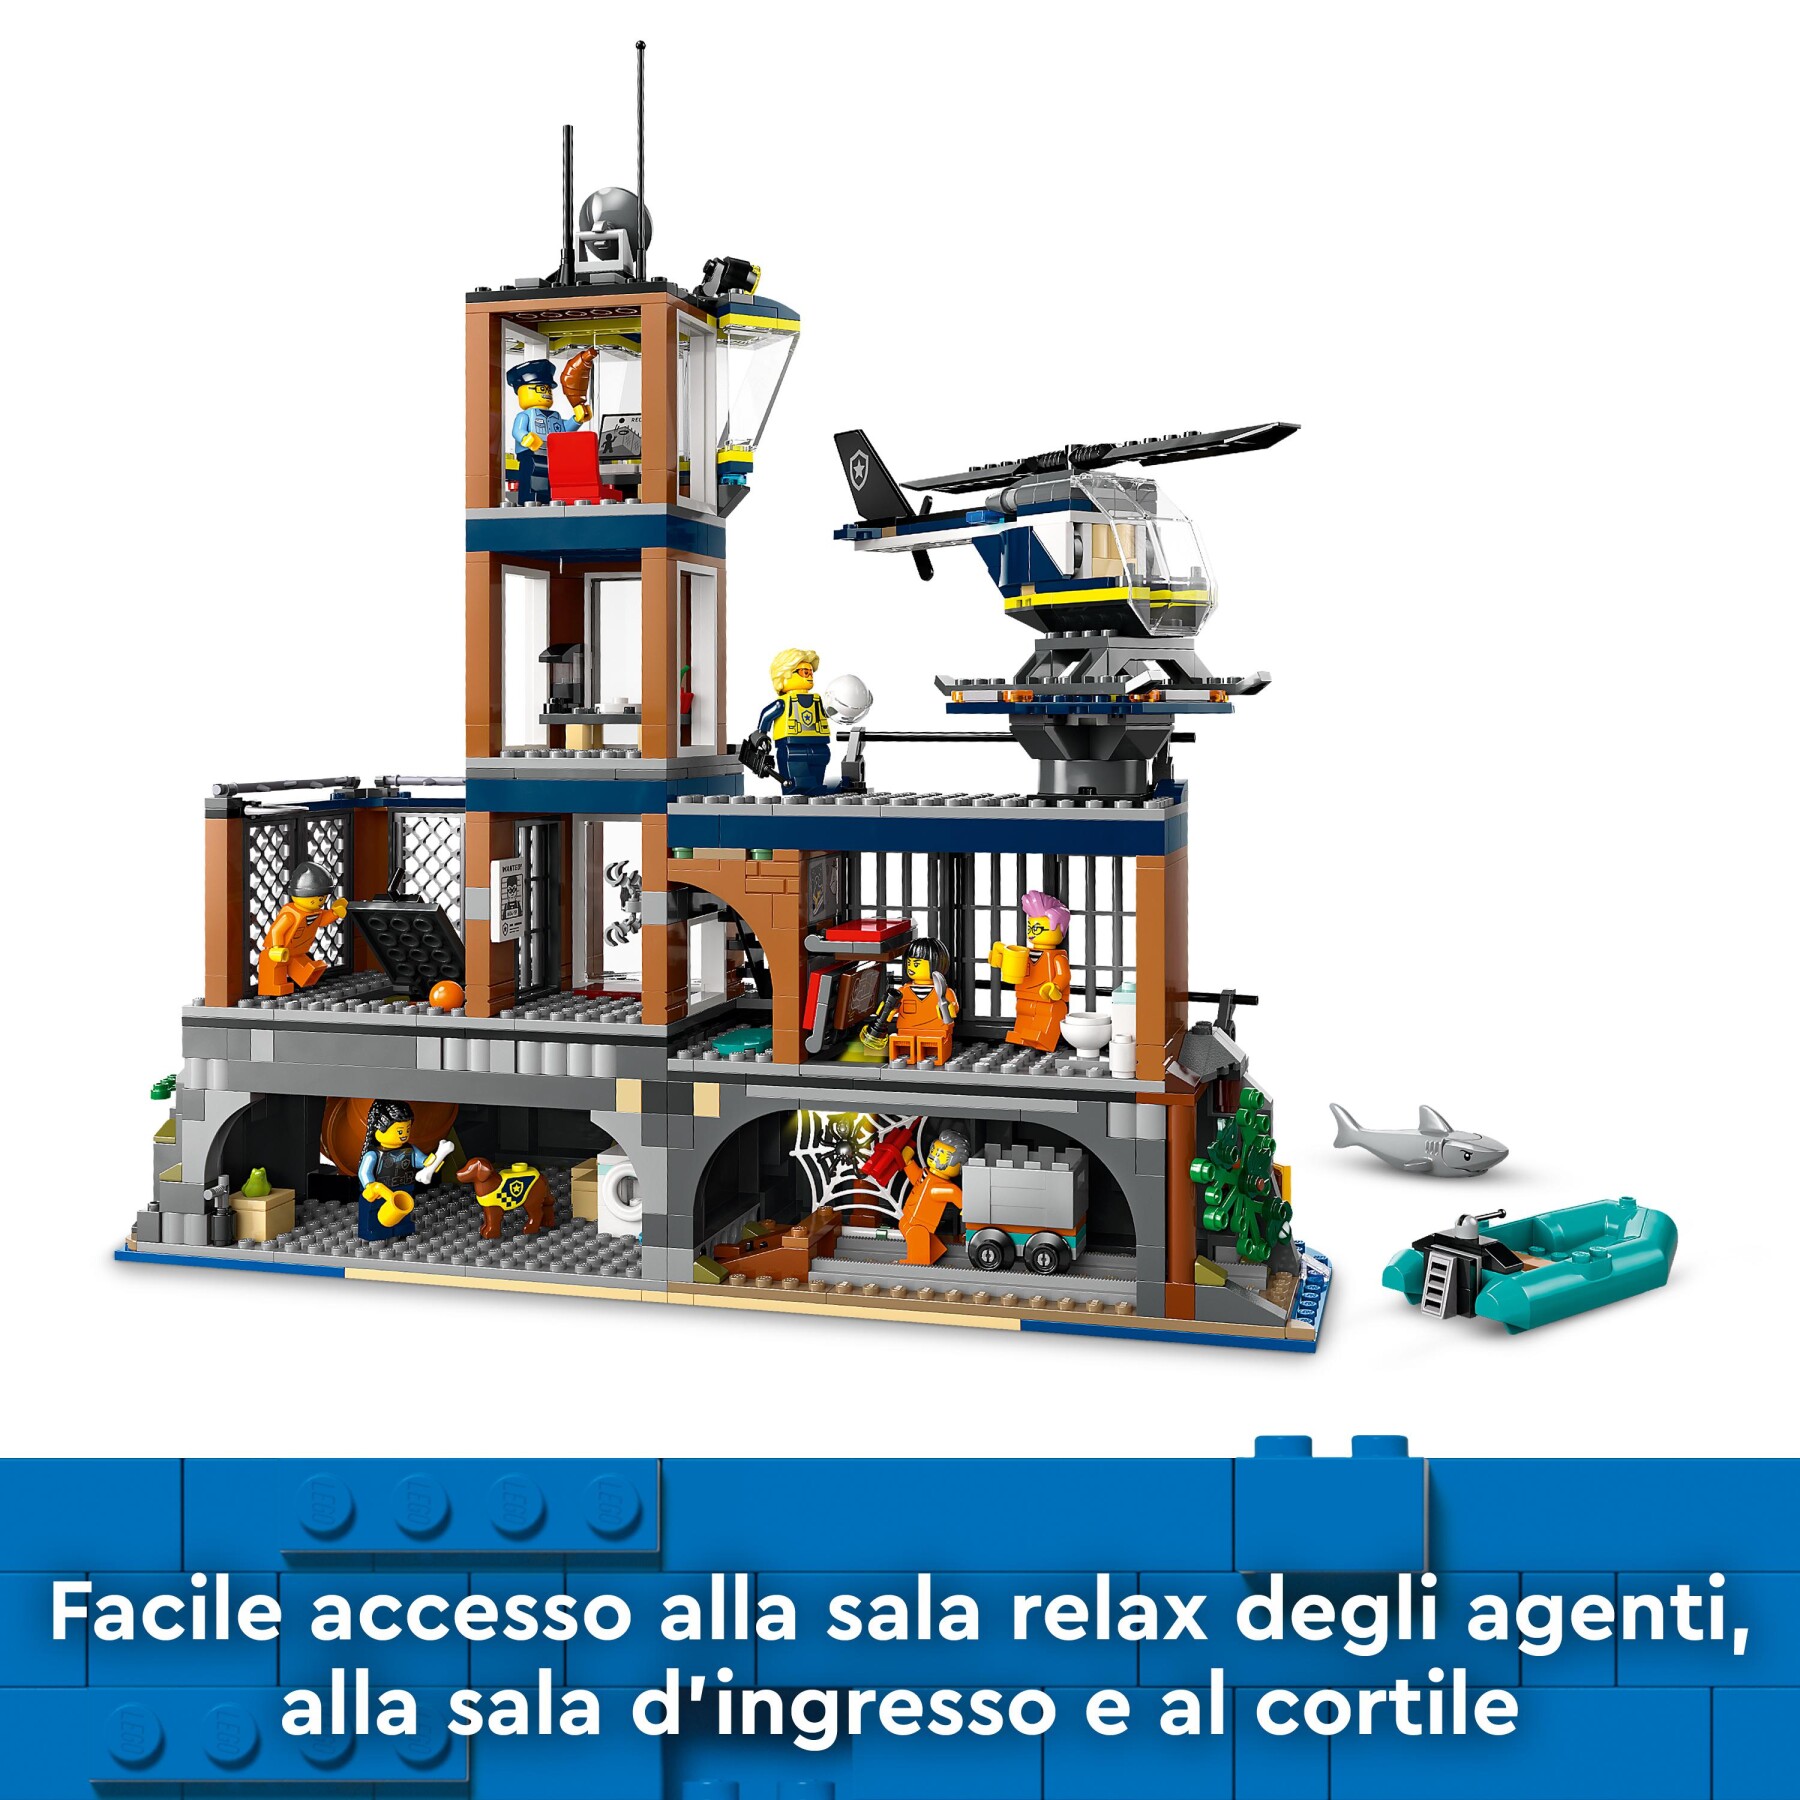 Lego city 60419 prigione sull’isola della polizia, giocattolo ricco di funzioni con elicottero, barca, gommone e 7 minifigure - LEGO CITY